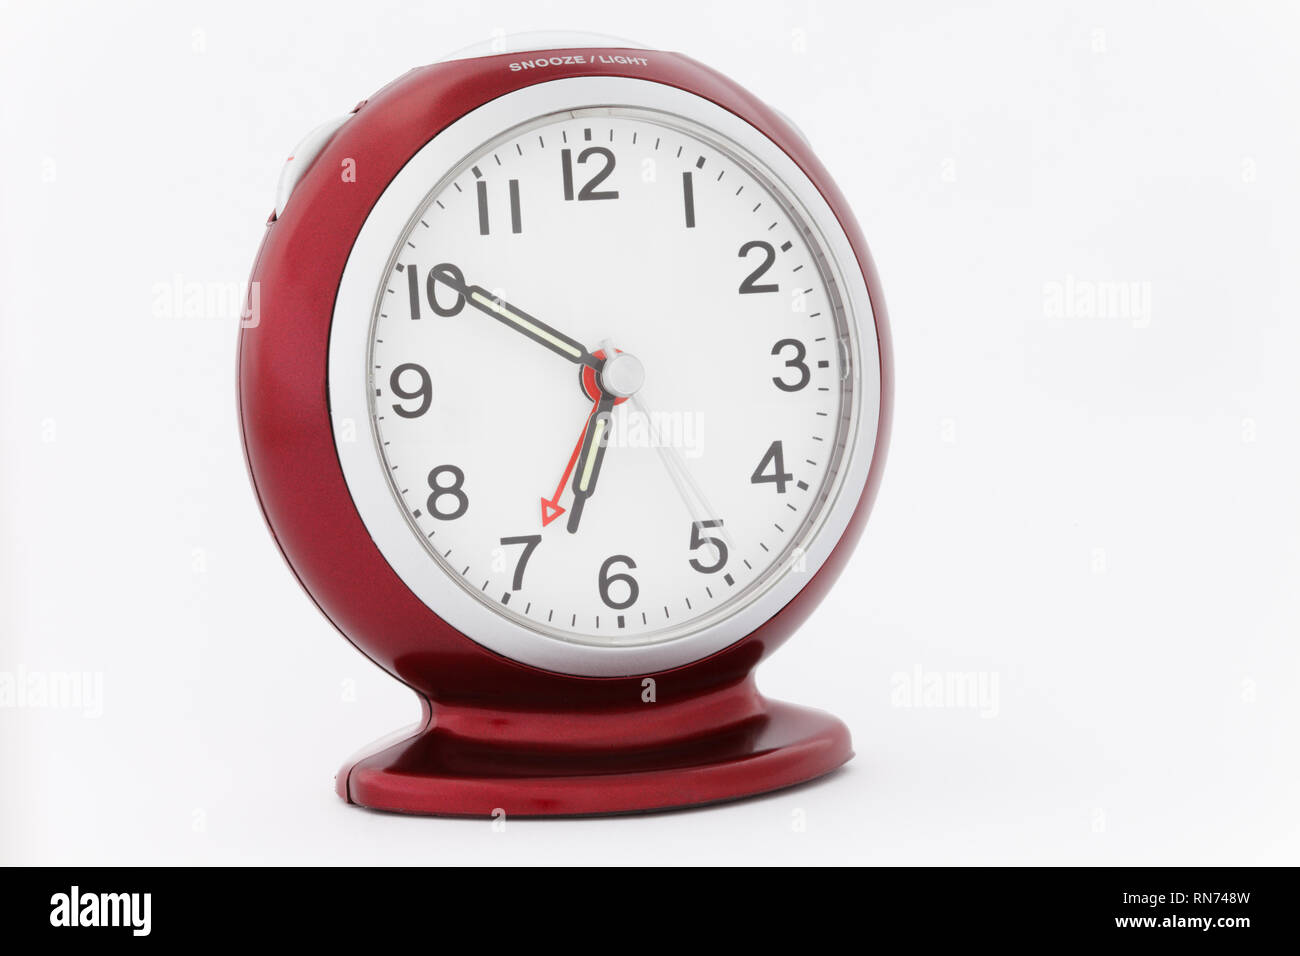 Reloj de alarma analógico rojo con las manos luminosas mostrando el tiempo entre diez y siete minutos justo antes de que la alarma se apague por la mañana. Concepto de sincronización perfecto Foto de stock